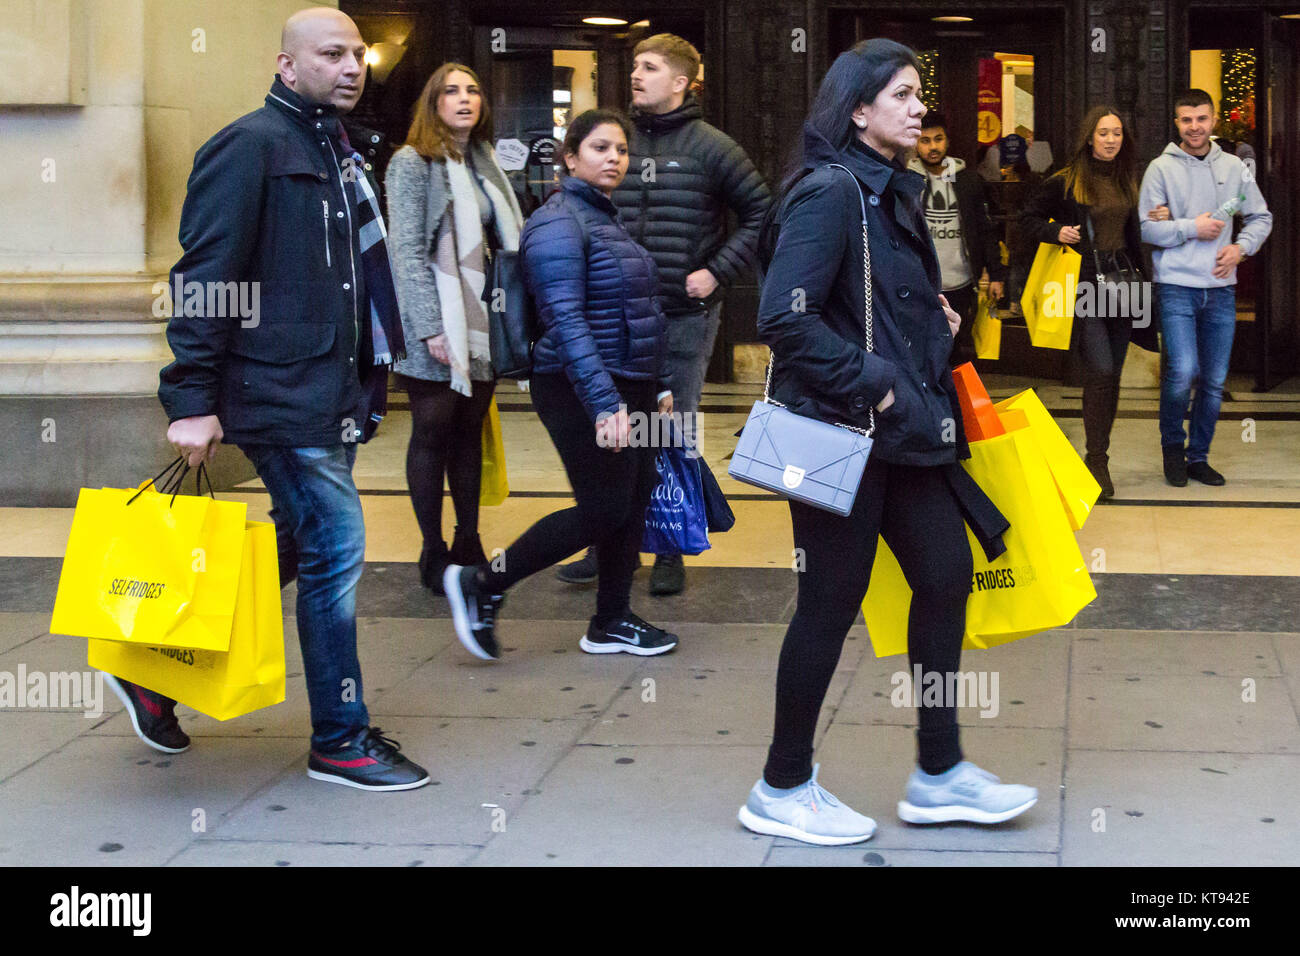 Londra, Regno Unito. 23 Dic, 2017. Shoppers folla londinese di Oxford Street sulla seconda ultimo shopping giorni prima di Natale, con molti negozi ora offre fino al 70% di sconto come essi spingono a fare le loro previsioni di vendita. Credito: Paolo Davey/Alamy Live News Foto Stock